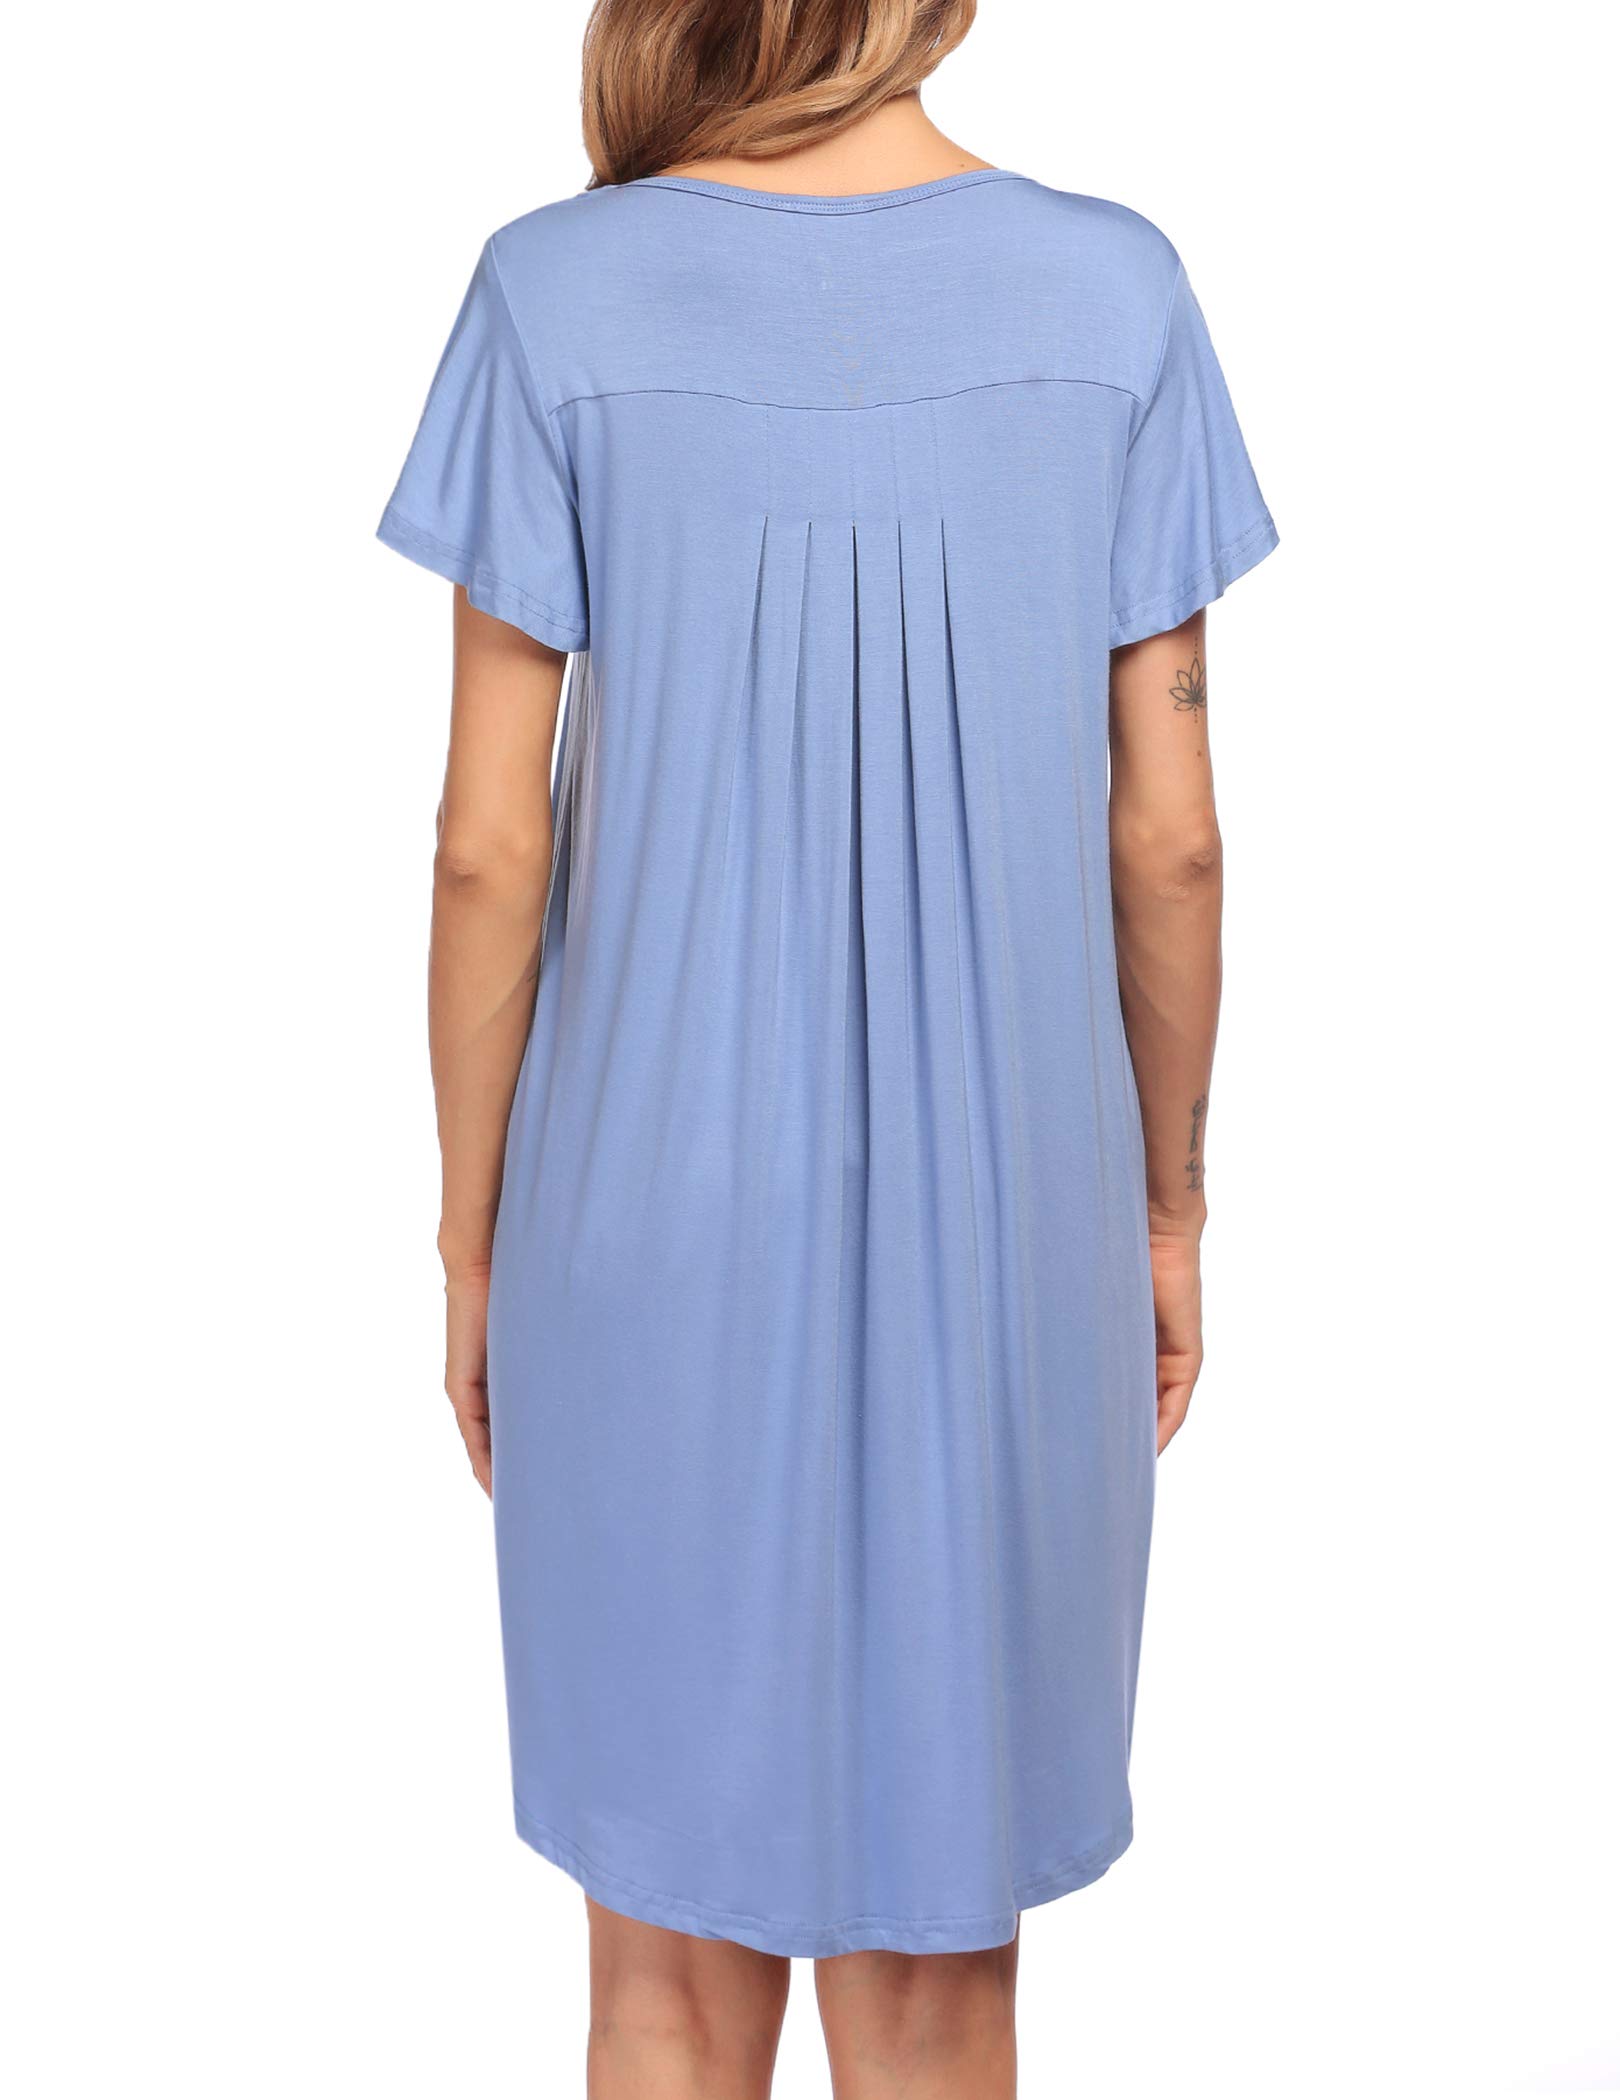 Эмэгтэй унтлагын цамц Зөөлөн унтлагын хувцас (46)